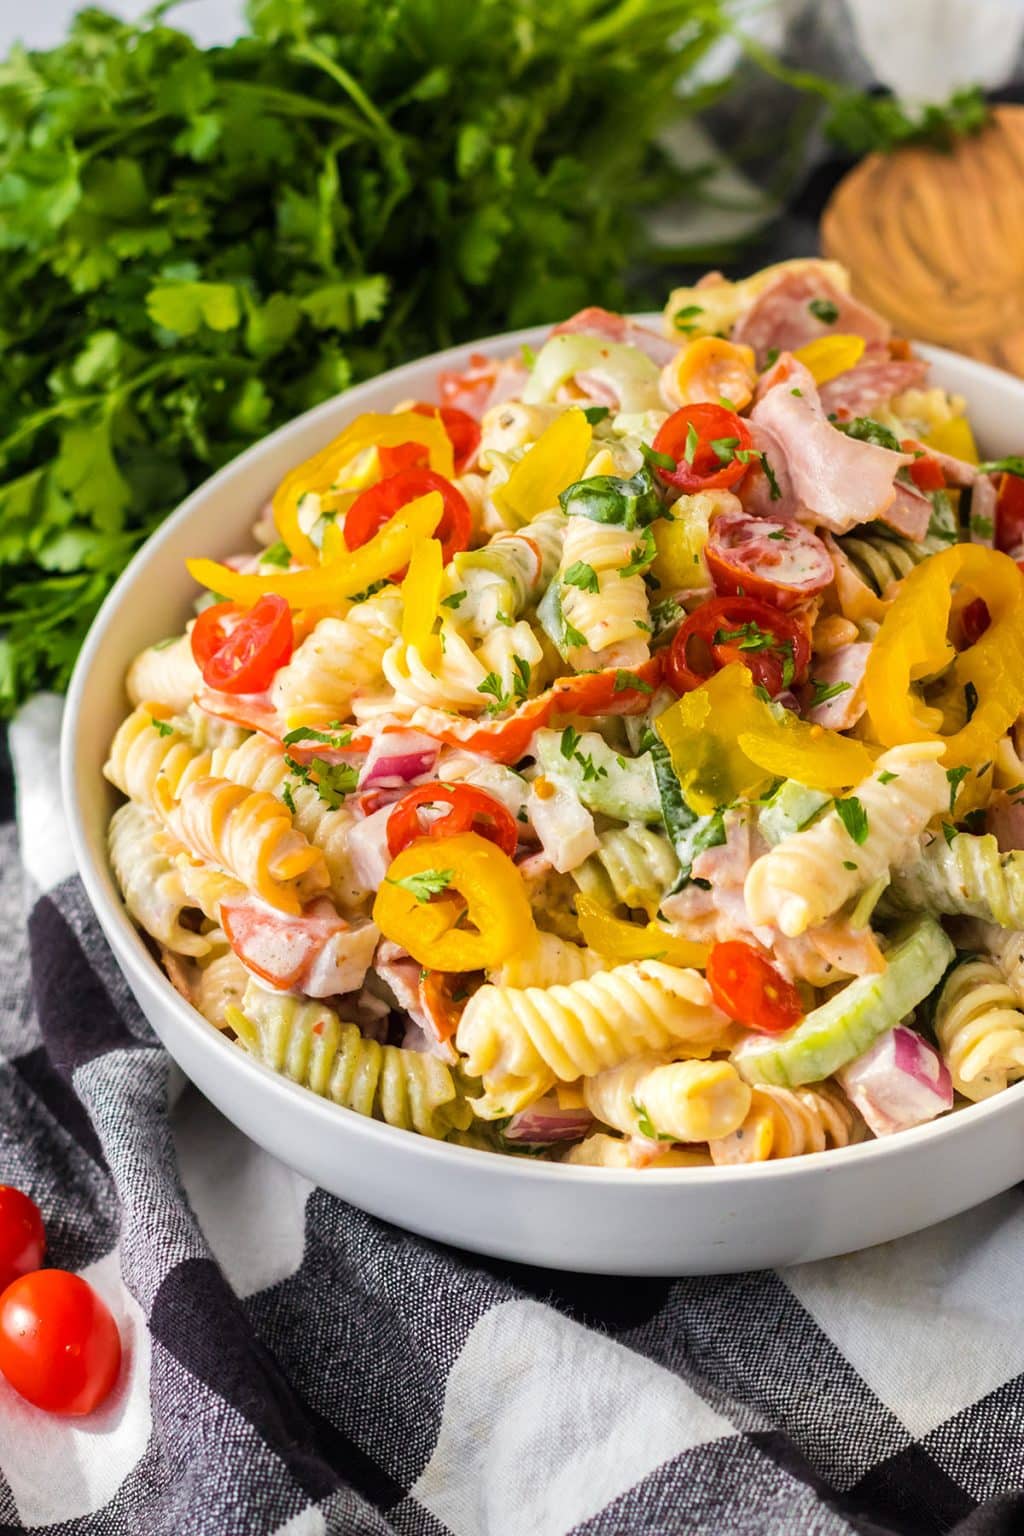 Hoagie Salad: Italian Sub Pasta Salad